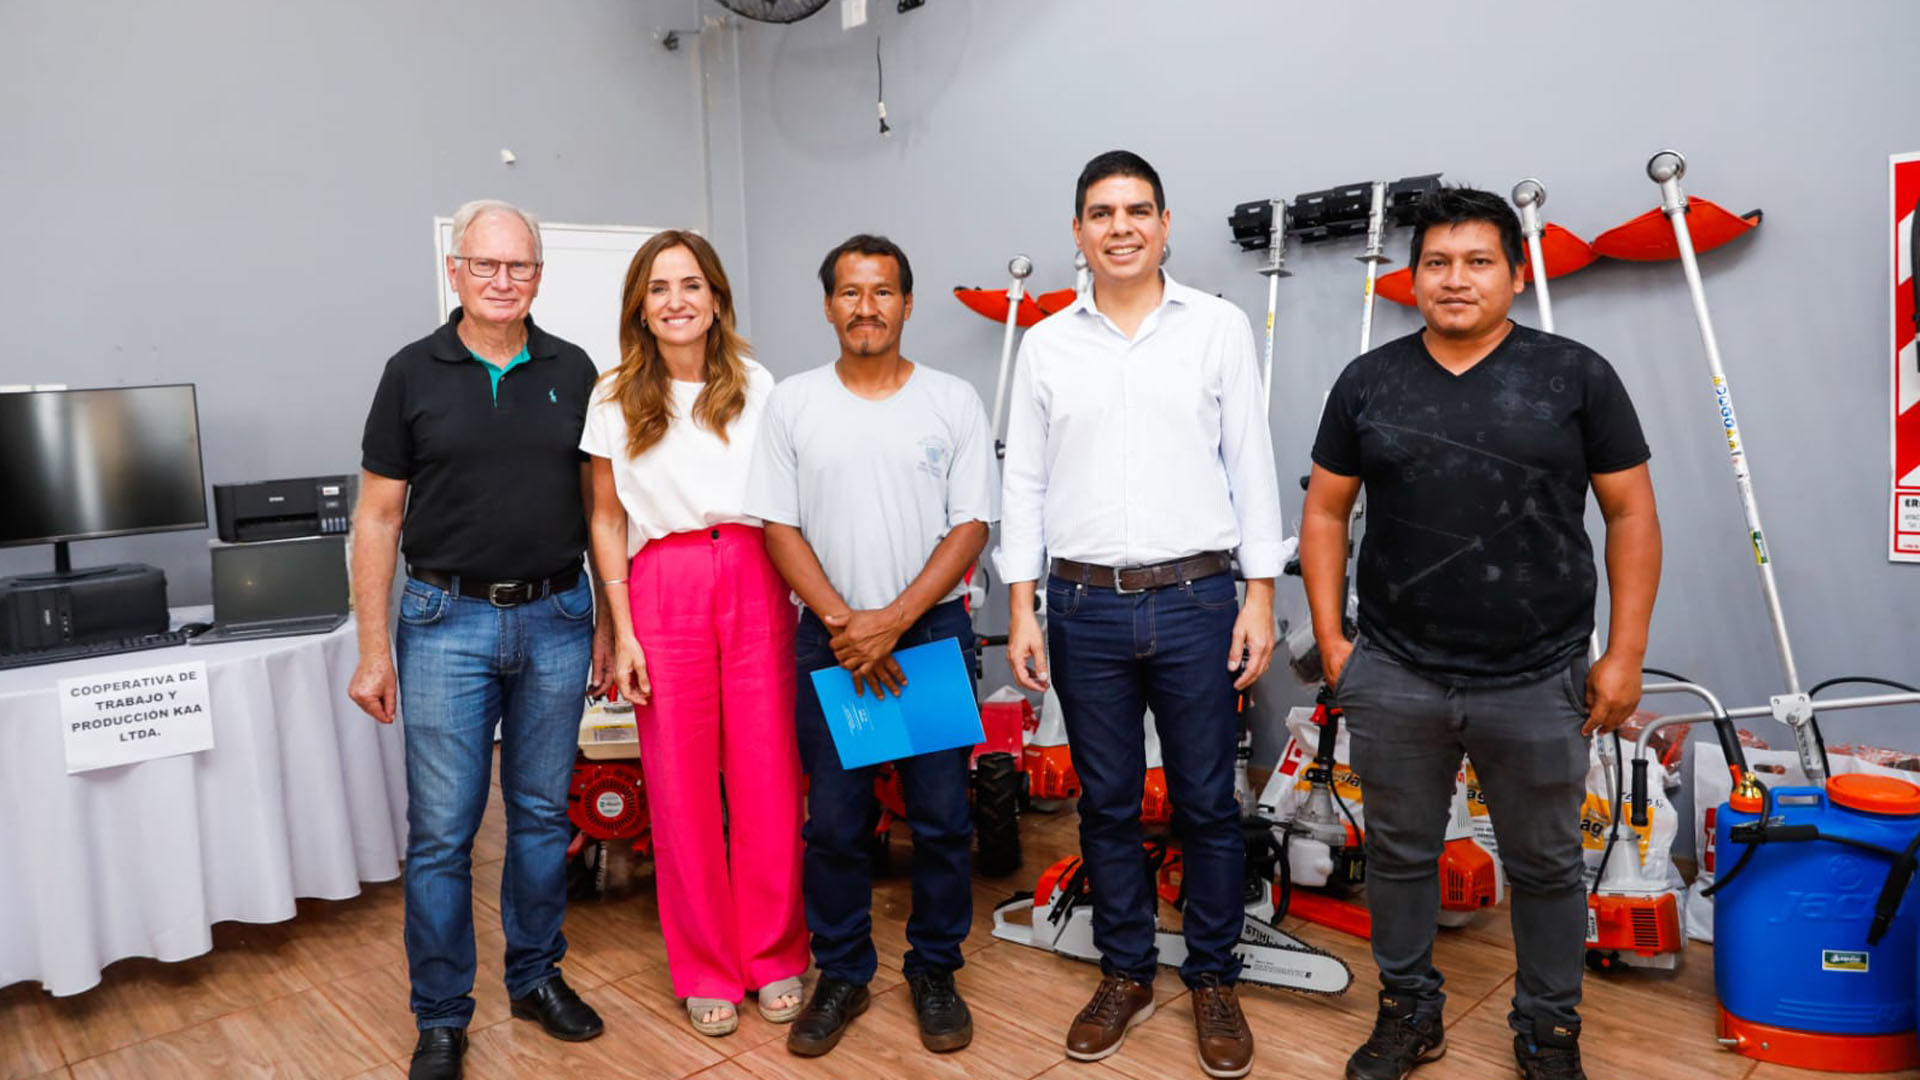 La Ministra Victoria Tolosa Paz junto a emprendedores que recibieron máquinas e insumos a través del Banco e Mpaquinas y Herramientas.